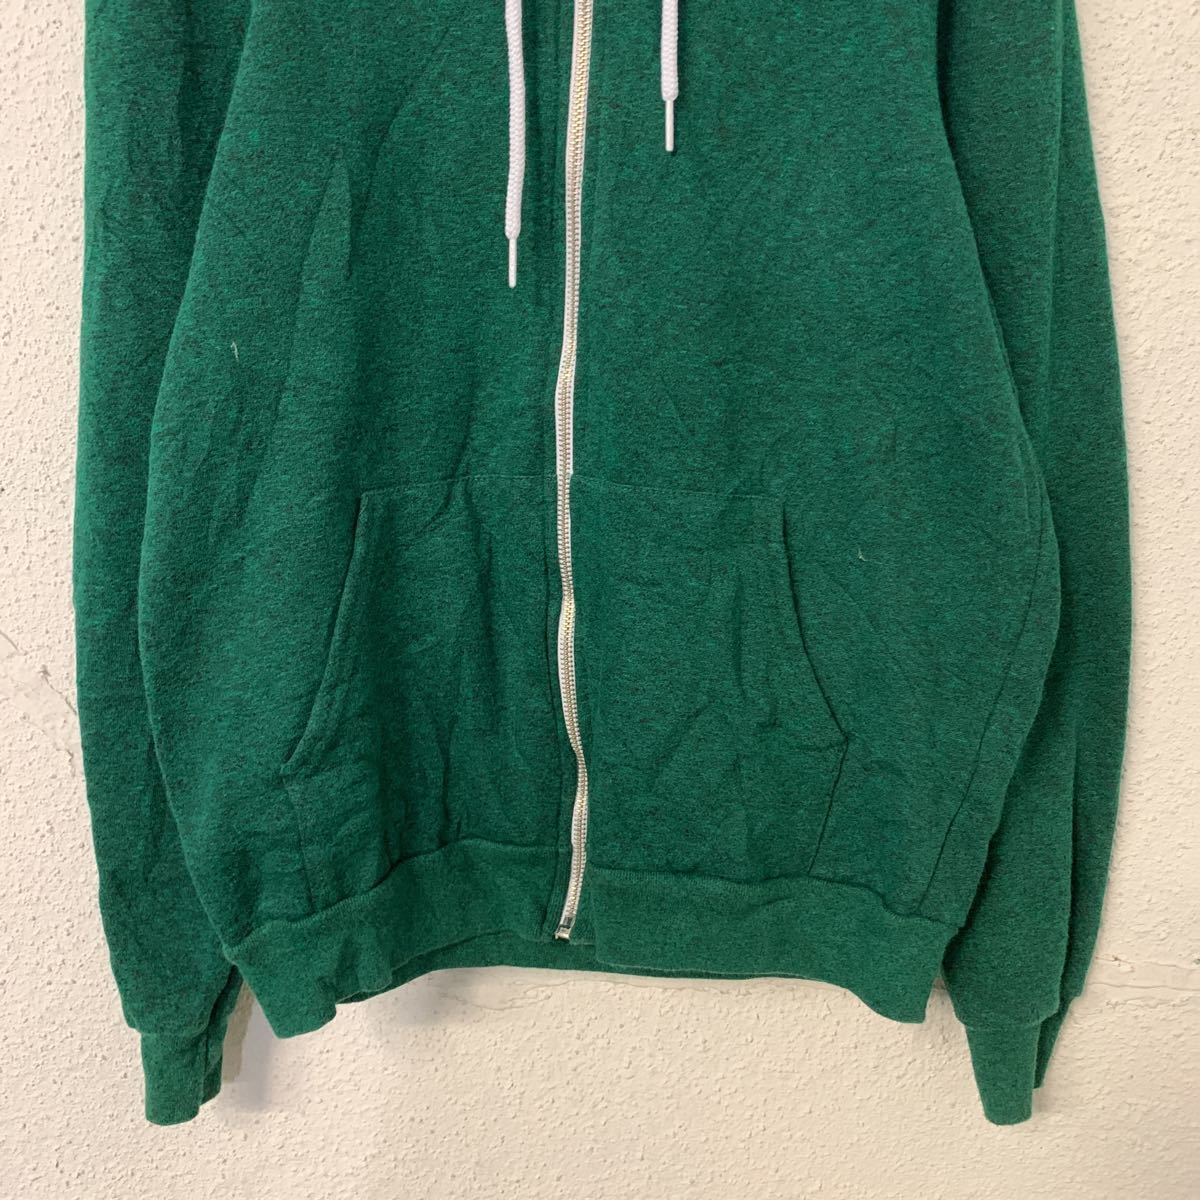 American apparel Zip выше тренировочный Parker wi мужской S зеленый одноцветный Ame apa б/у одежда . America запас a411-5229